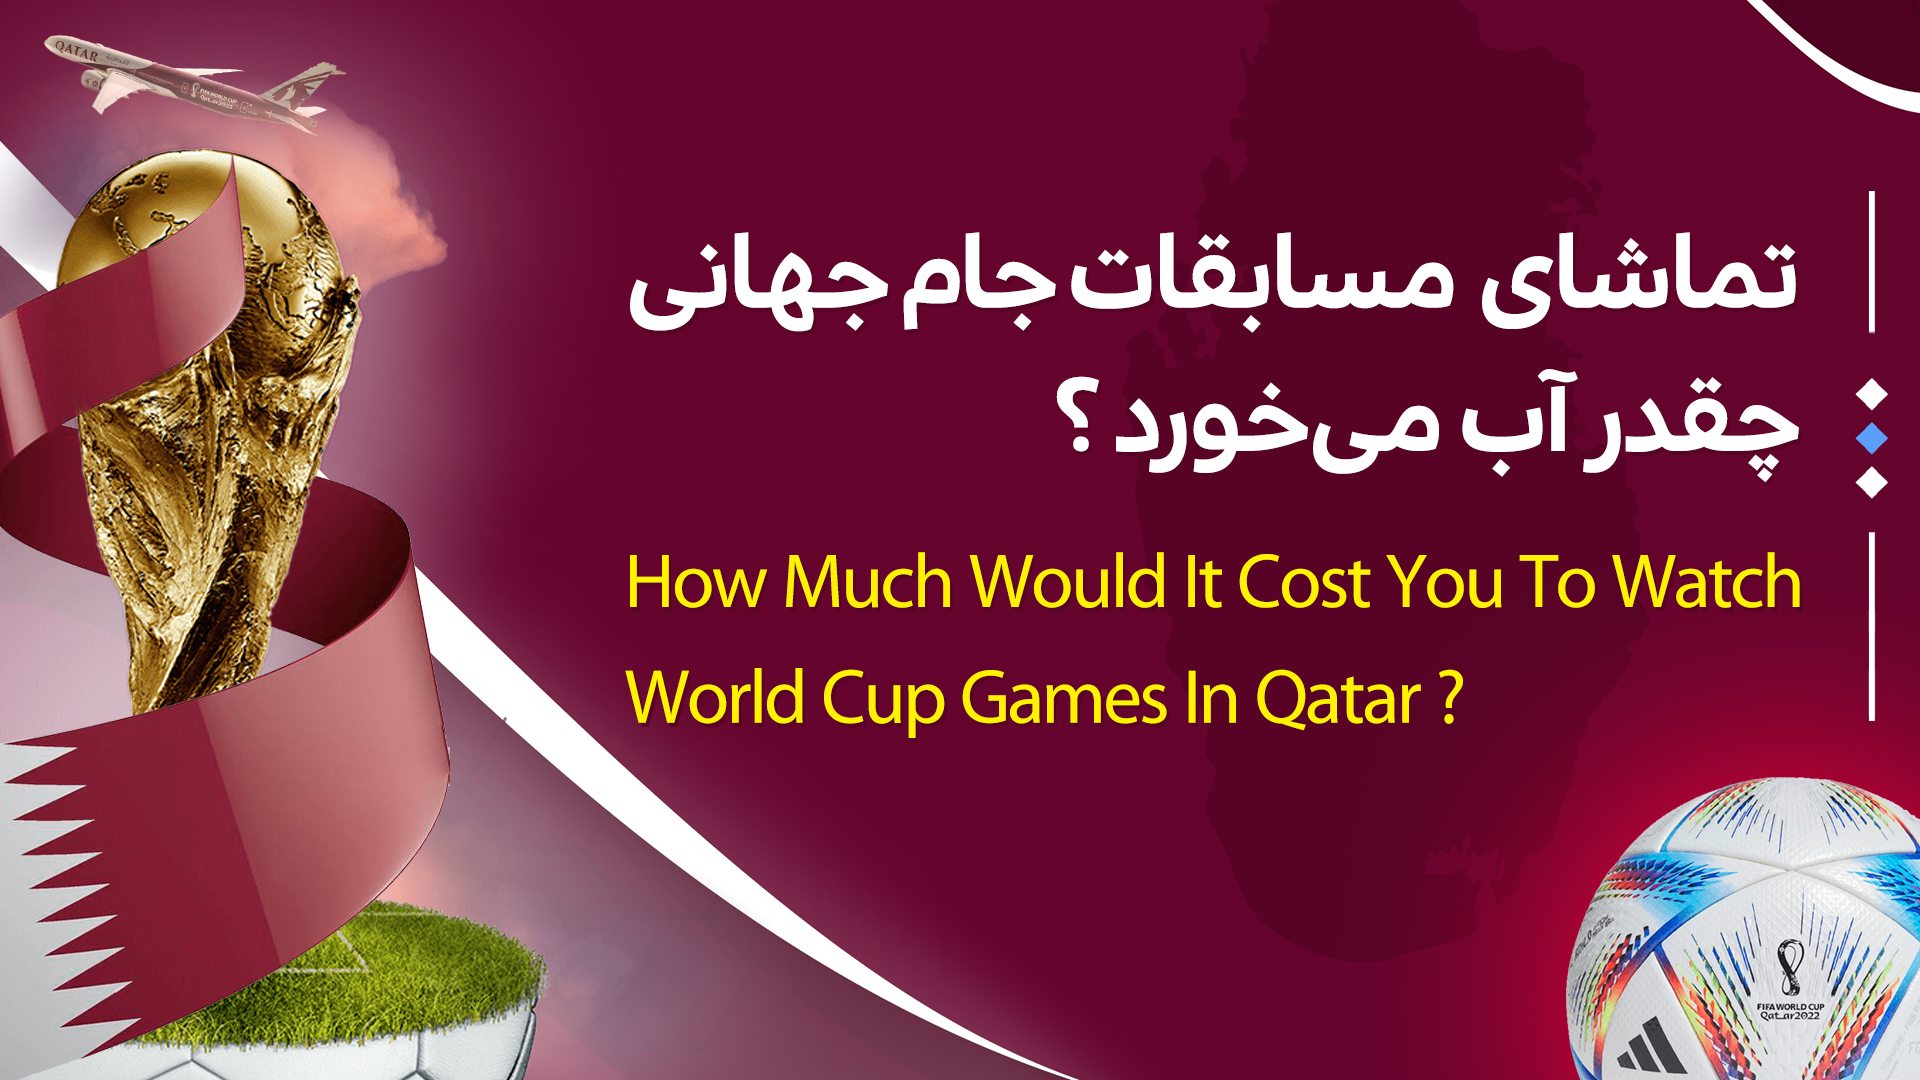 هزینه سفر به قطر